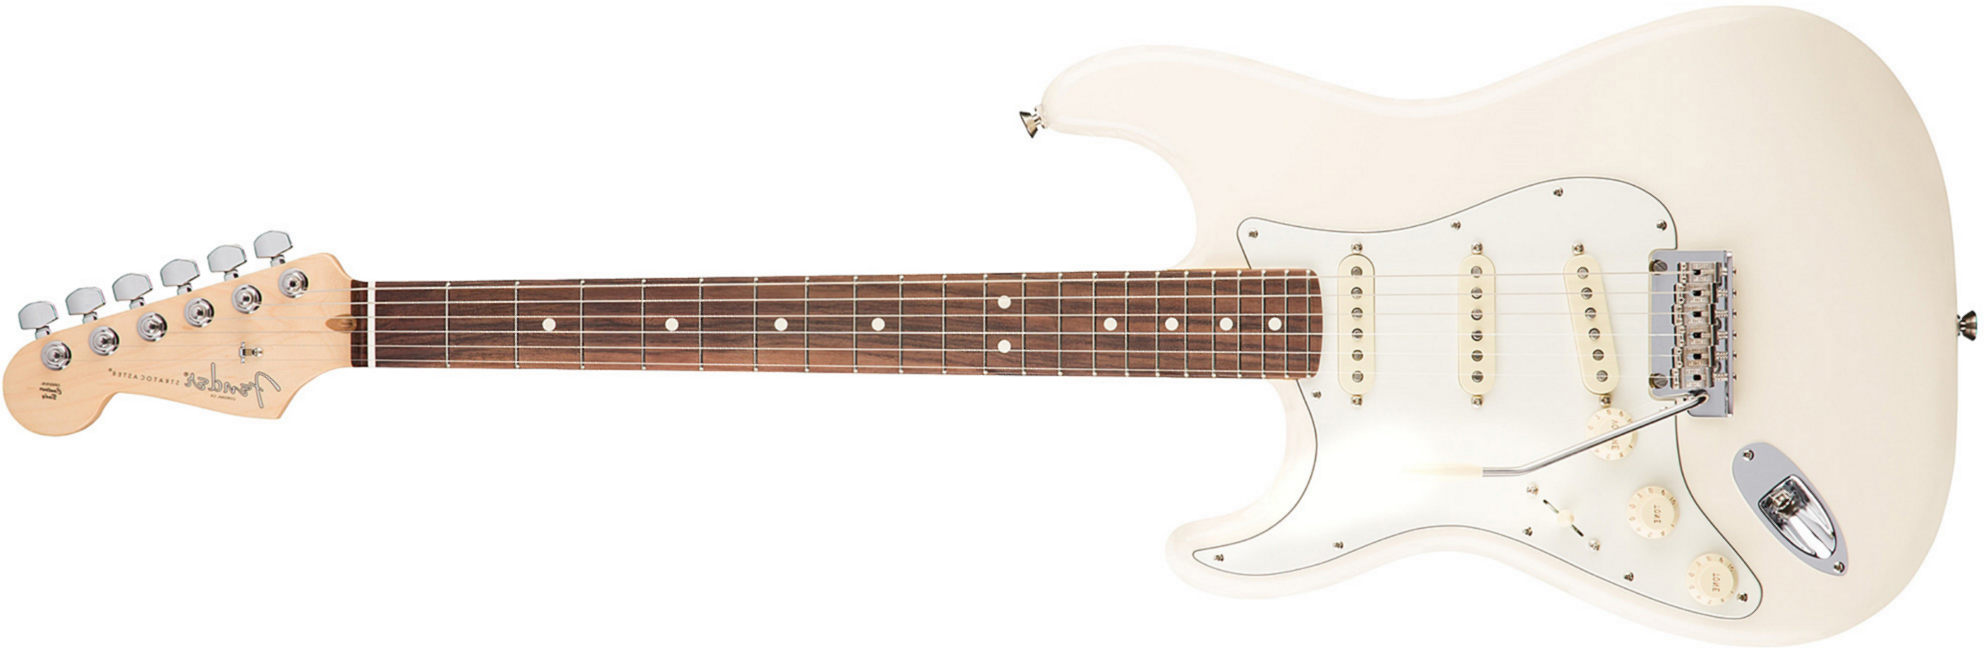 Fender Strat American Professional Lh Usa Gaucher 3s Rw - Olympic White - Linkshandige elektrische gitaar - Main picture